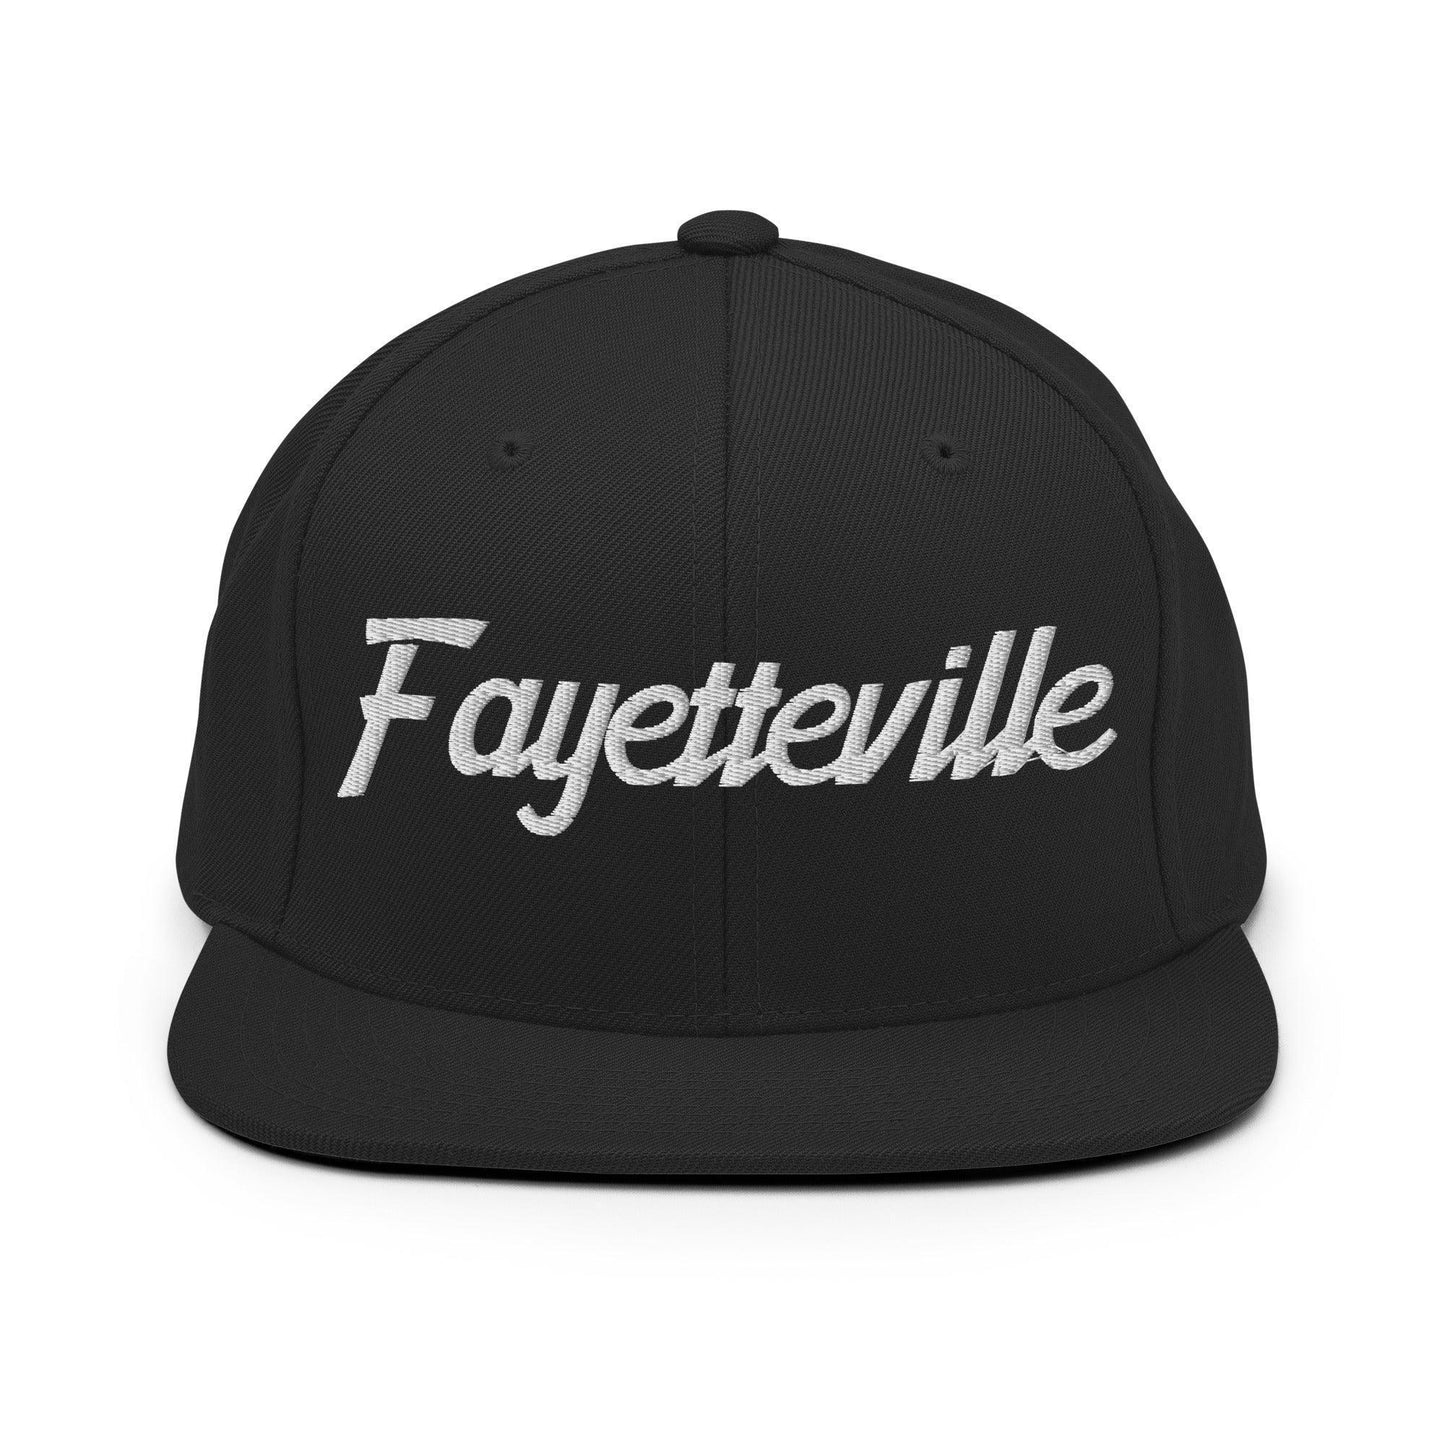 Fayetteville Script Snapback Hat Black